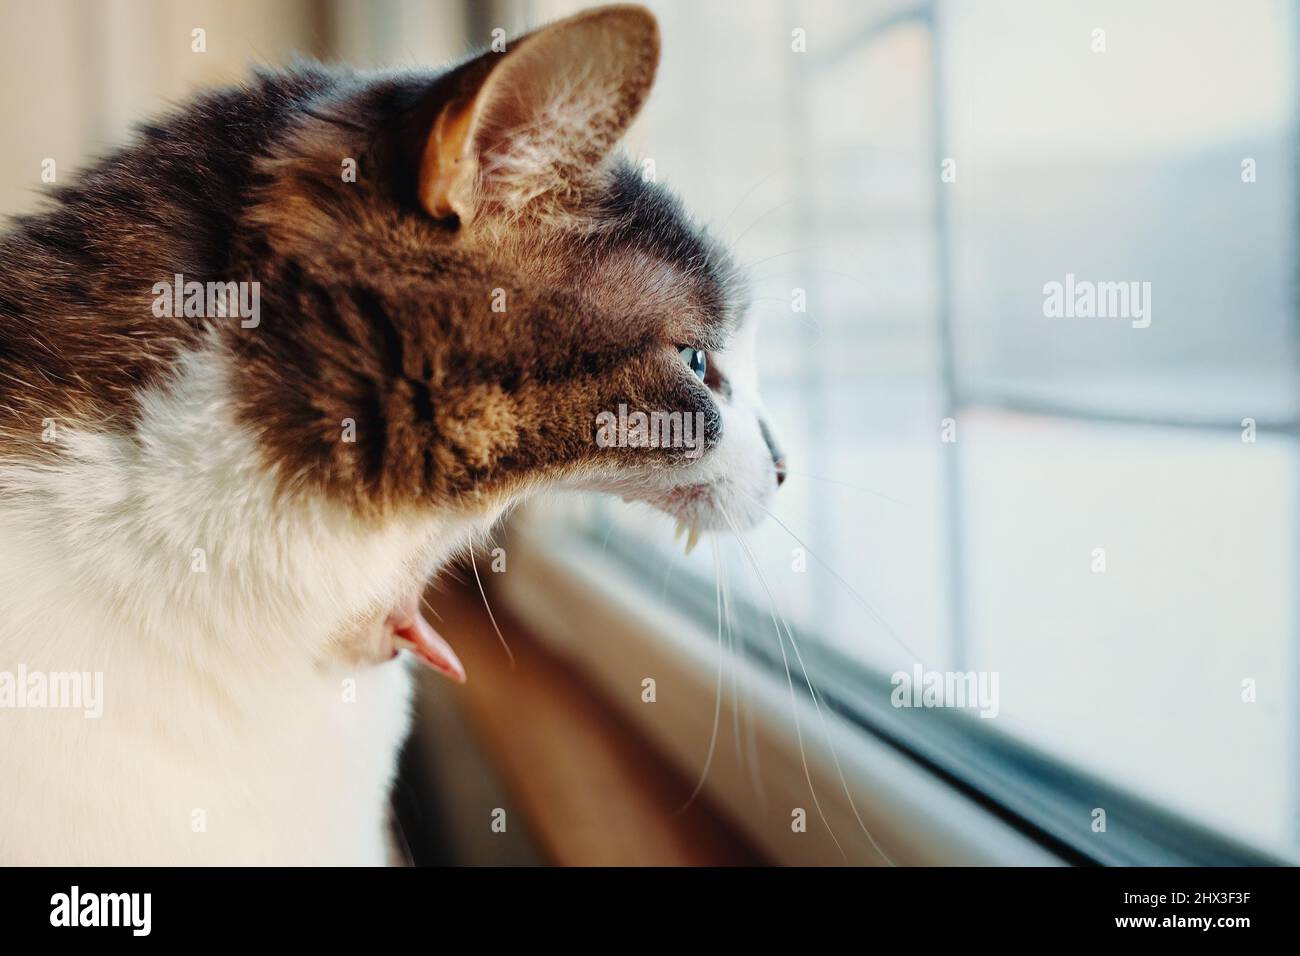 Meme di gatto immagini e fotografie stock ad alta risoluzione - Alamy